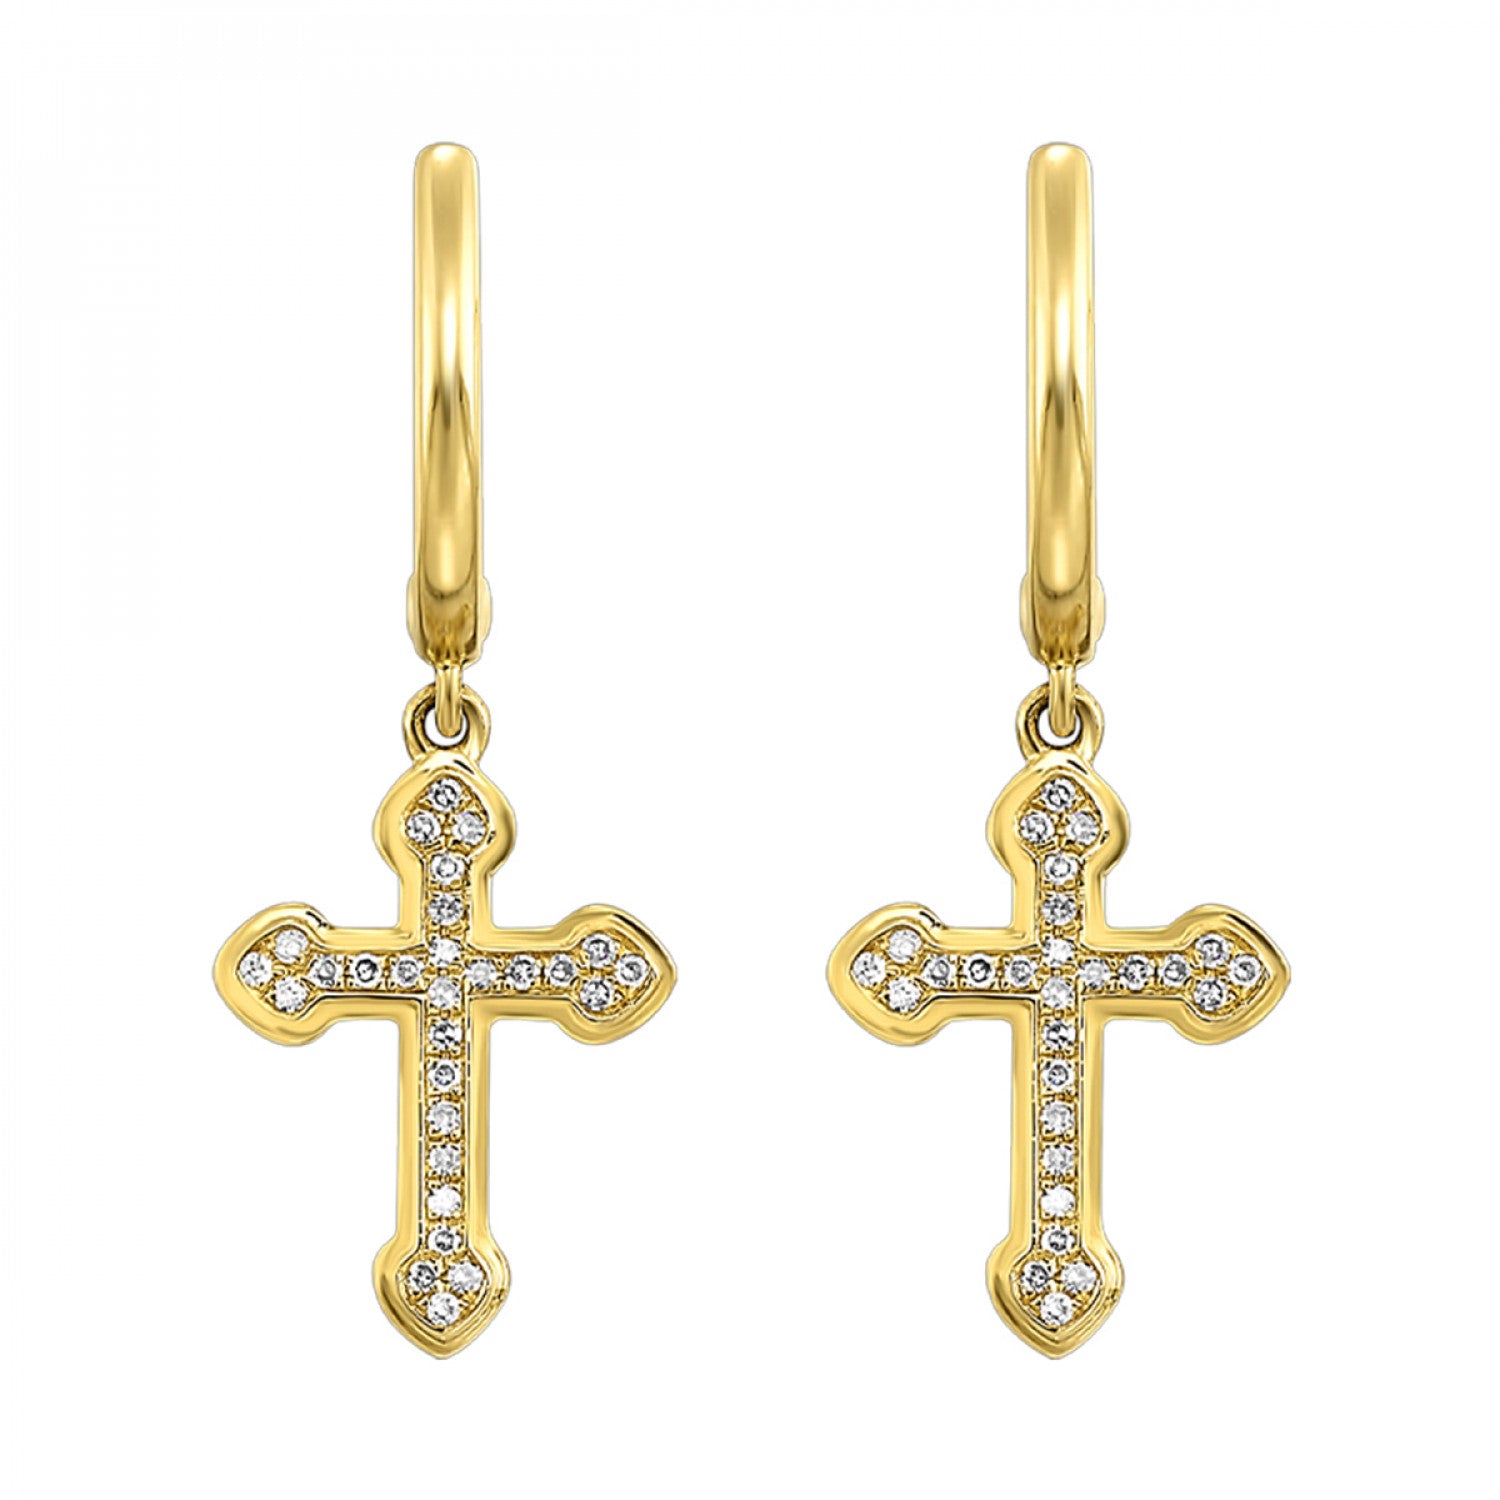 Cross 14k Yellow Gold Stud Earrings in White Diamond